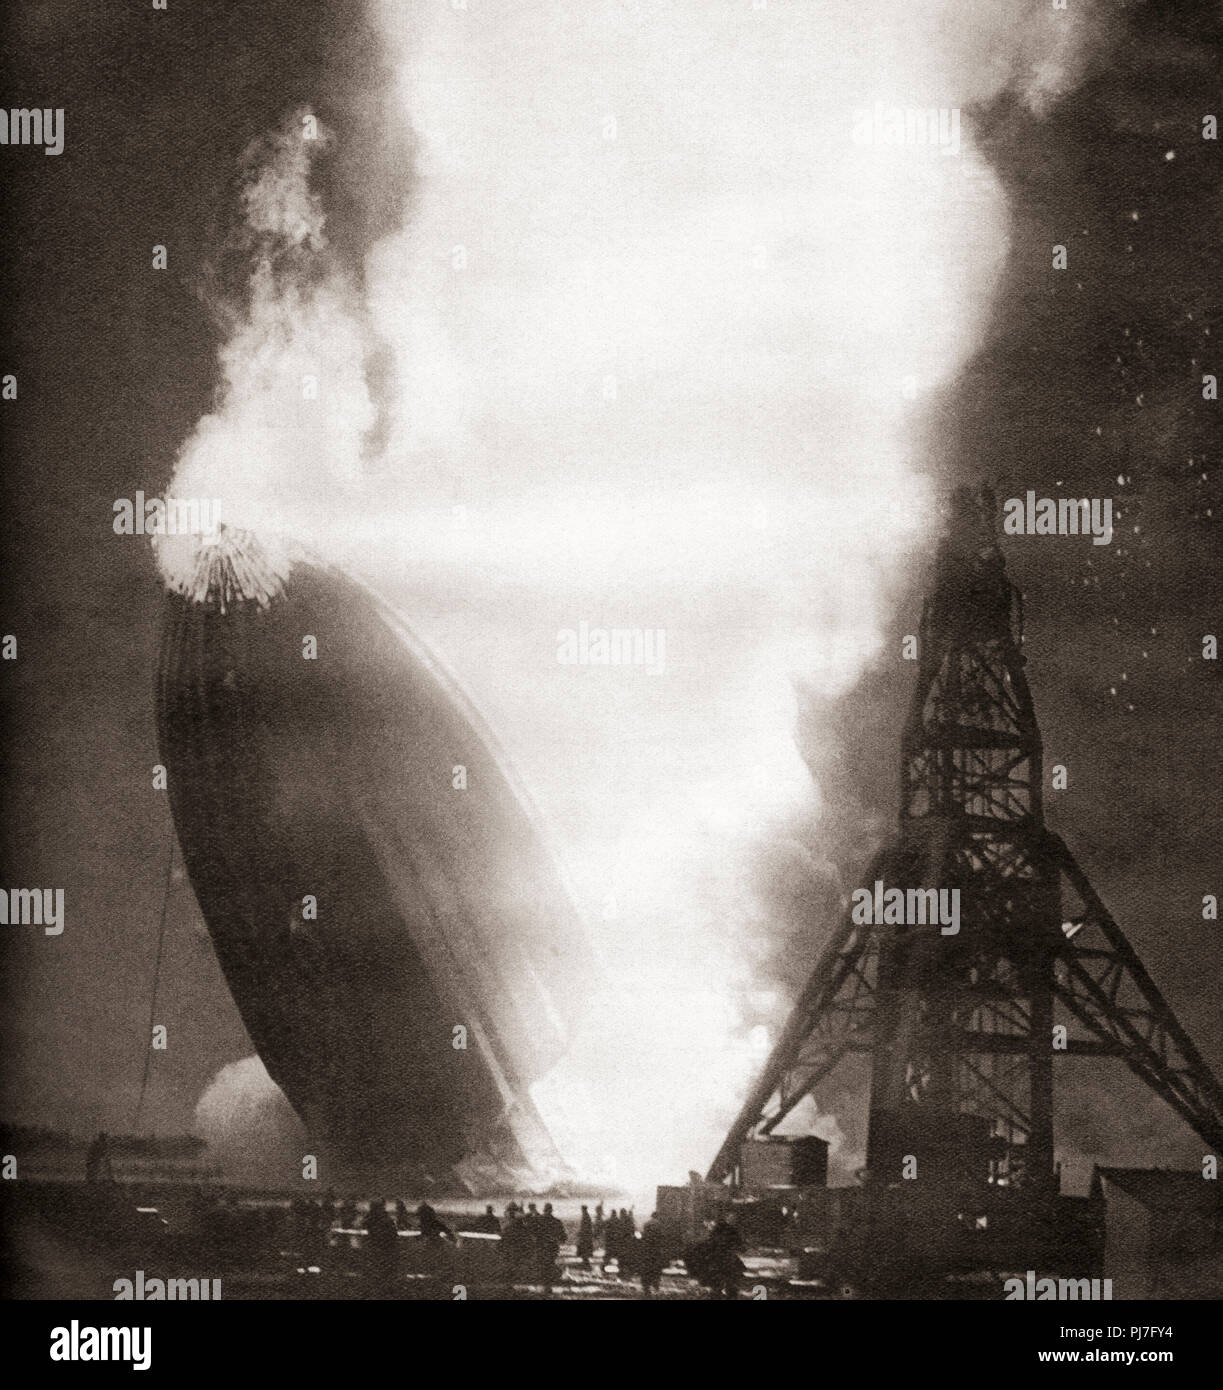 Il disastro Hindenburg, 6 maggio 1937. Il passeggero tedesco dirigibile LZ 129 Hindenburg preso fuoco e fu distrutta mentre tenta di dock con il suo montante di ormeggio presso la Naval Air Station Lakehurst, Manchester Township, New Jersey, Stati Uniti d'America. Da questi straordinari anni, pubblicato in 1938. Foto Stock